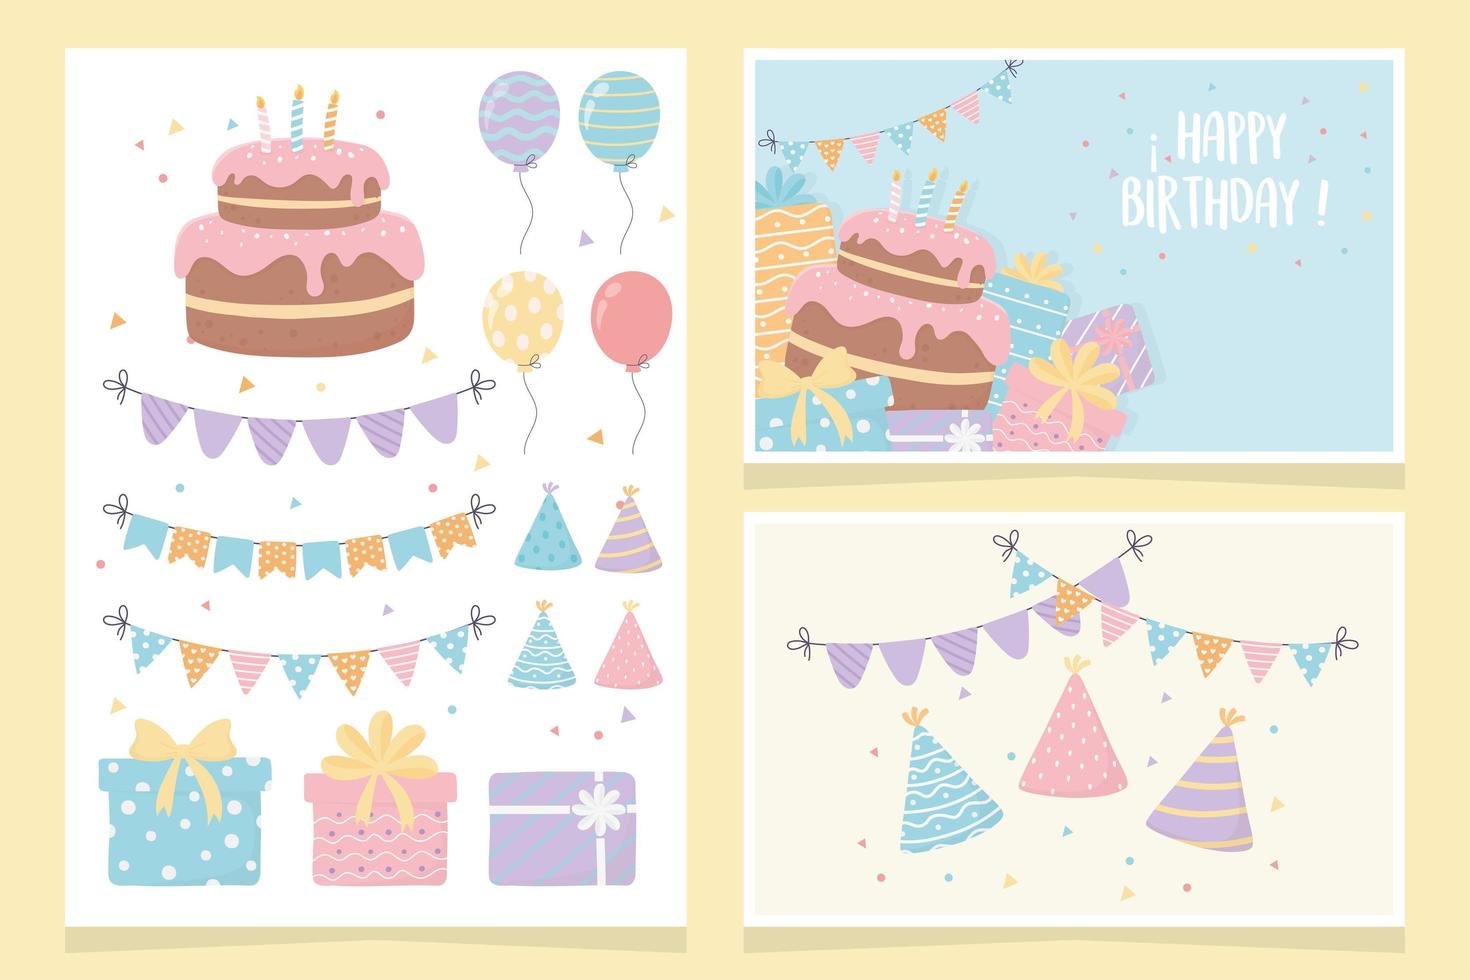 feliz cumpleaños pastel regalos globos banderines fiesta decoración tarjetas vector